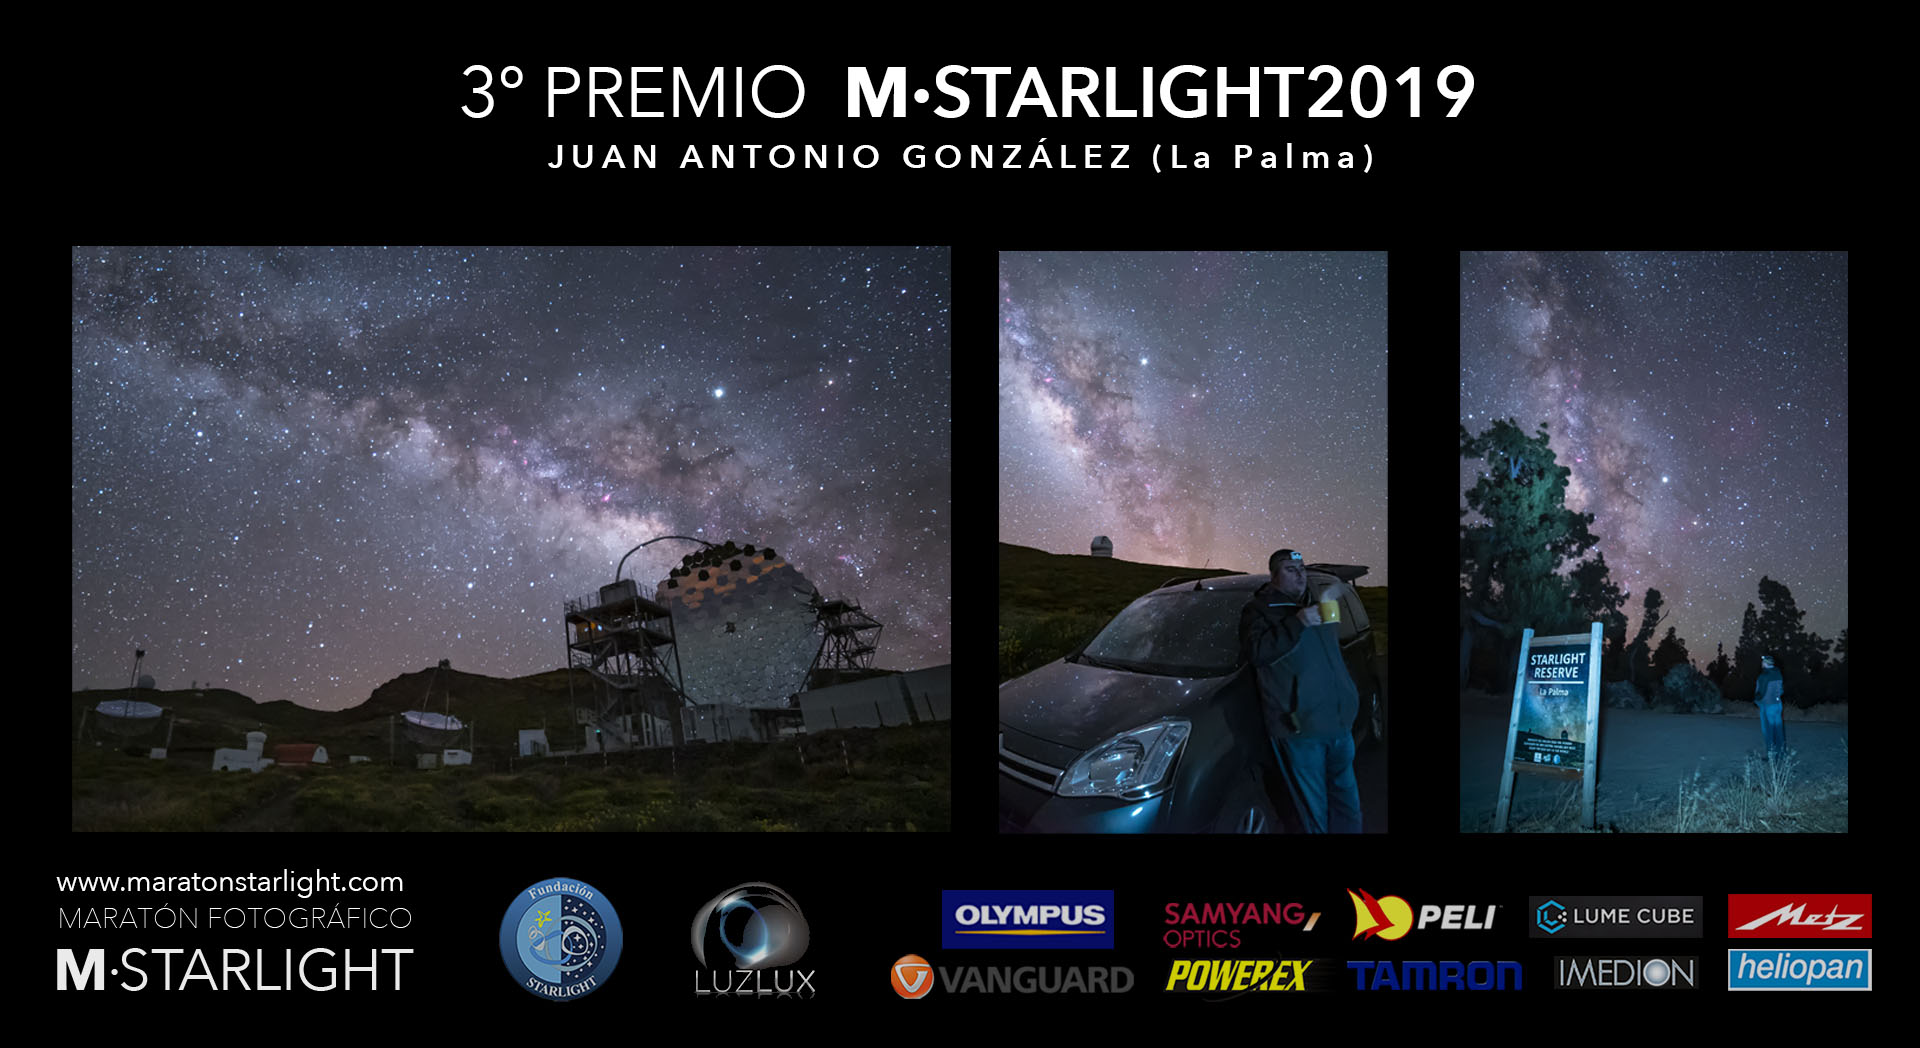 Ganadores Maratón Fotográfico Starlight 2019